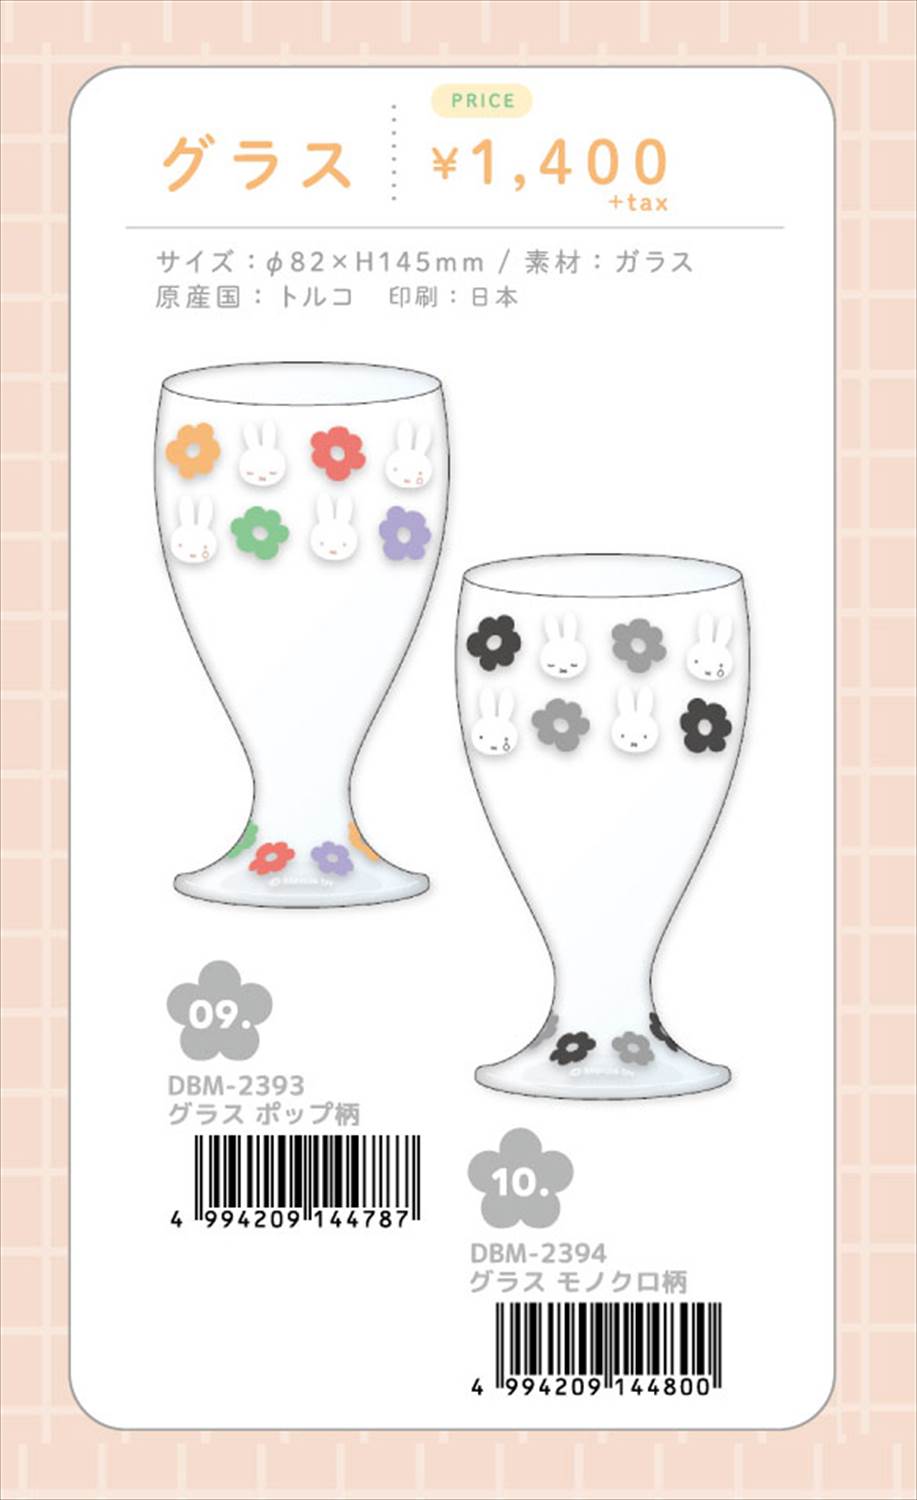 【予約品】ミッフィー Flower POP グラス《 5/29(水) 予約〆切り》※銀行振込・代引きでの注文不可